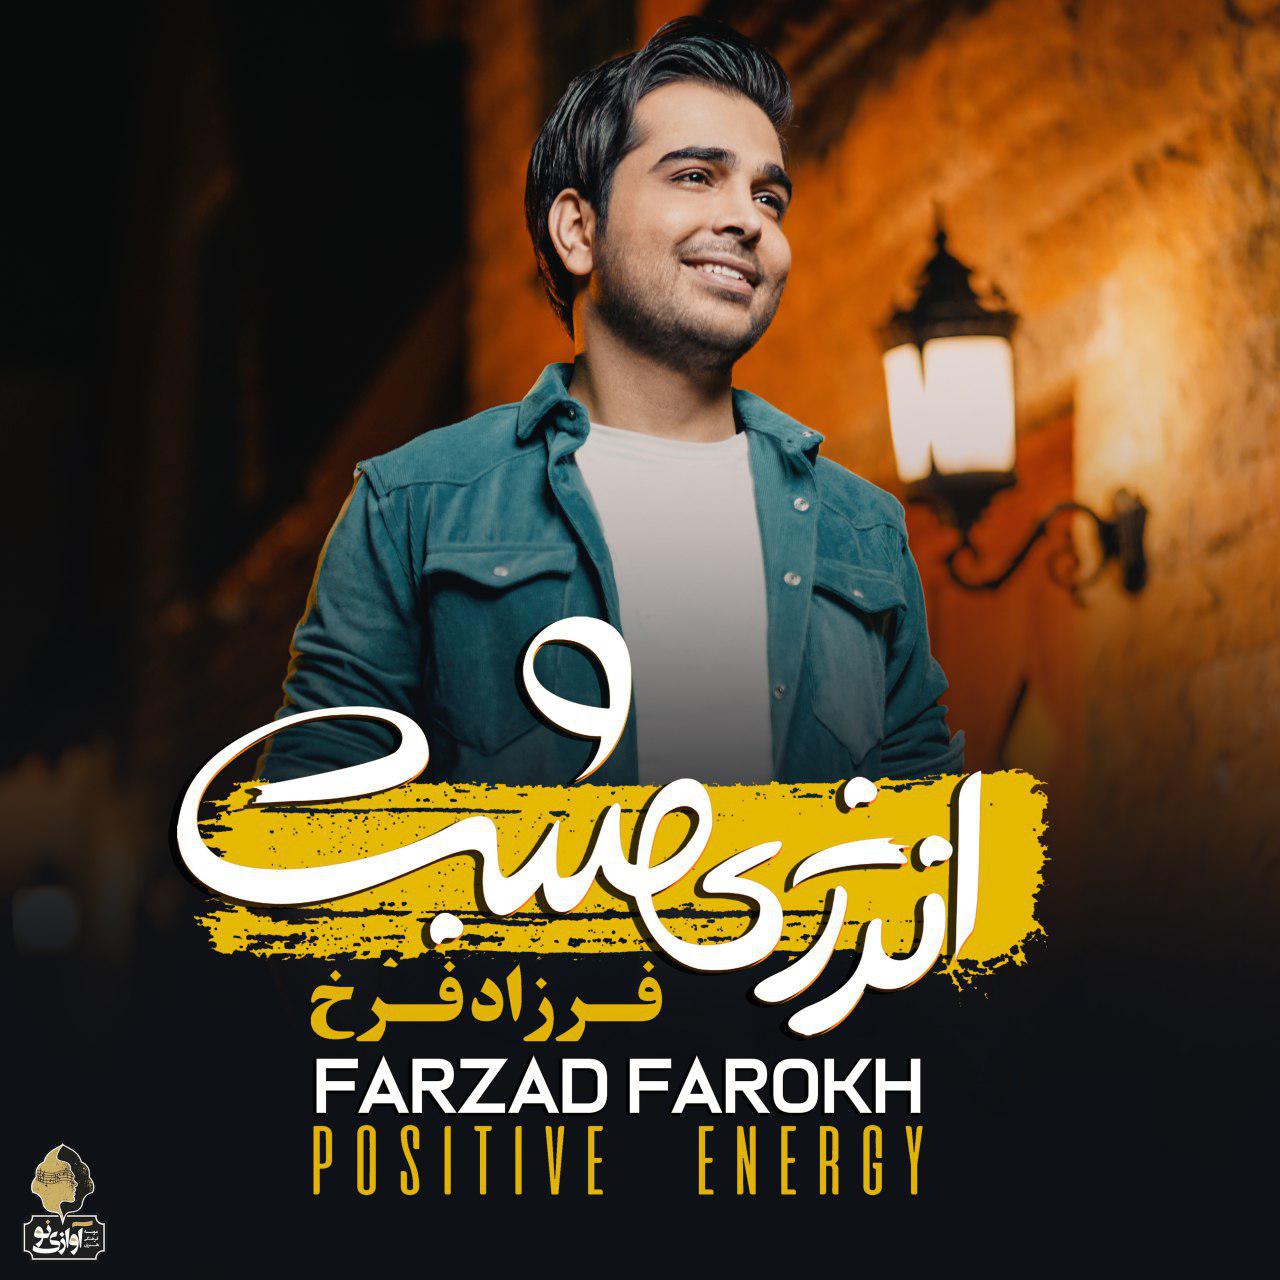  دانلود آهنگ جدید فرزاد فرخ - ای حان | Download New Music By Farzad Farokh - Ey jan